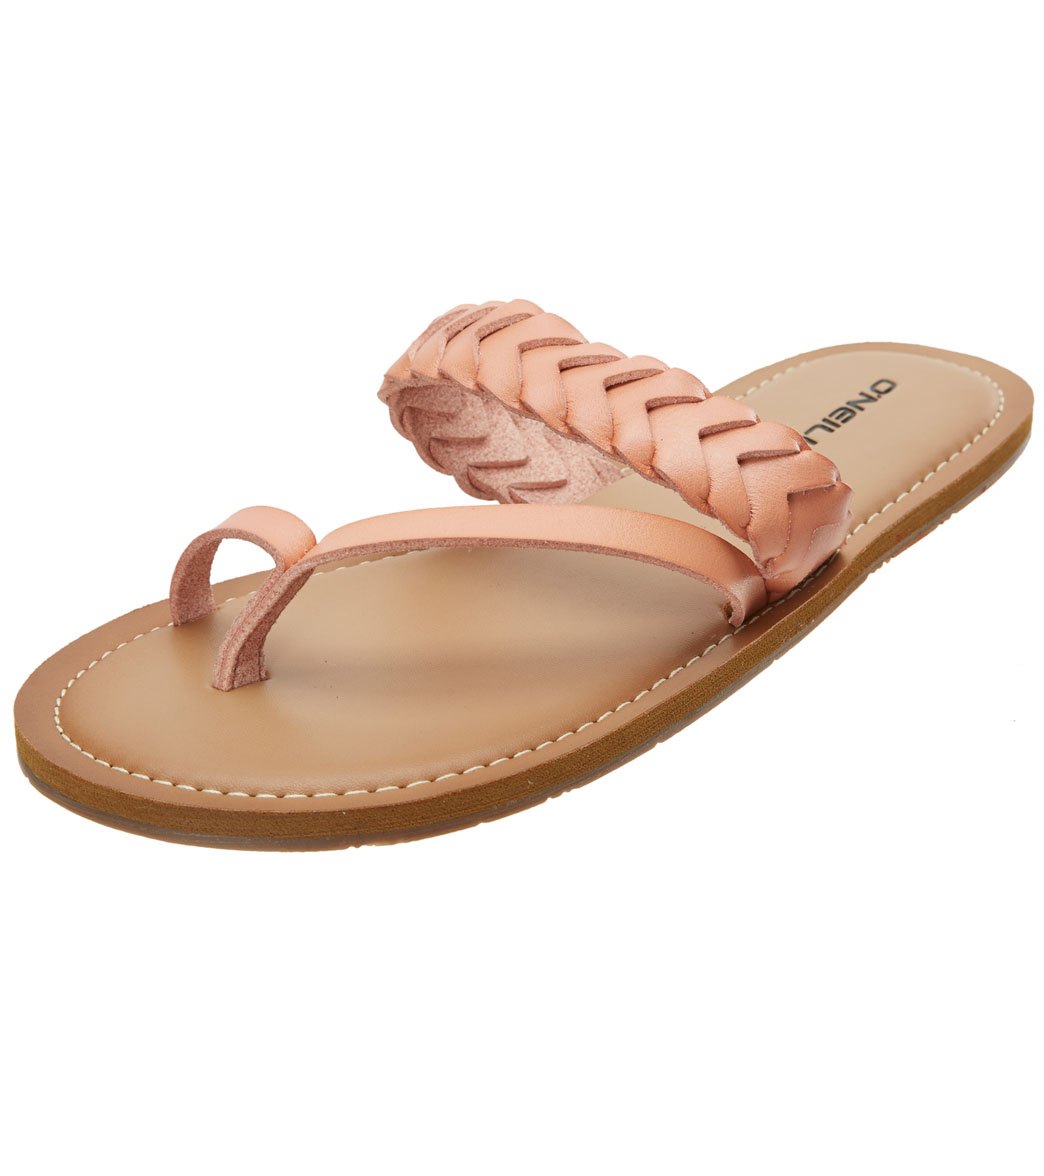 O'neill Women's Newport Sandals - Blush Pink 6 - Swimoutlet.com